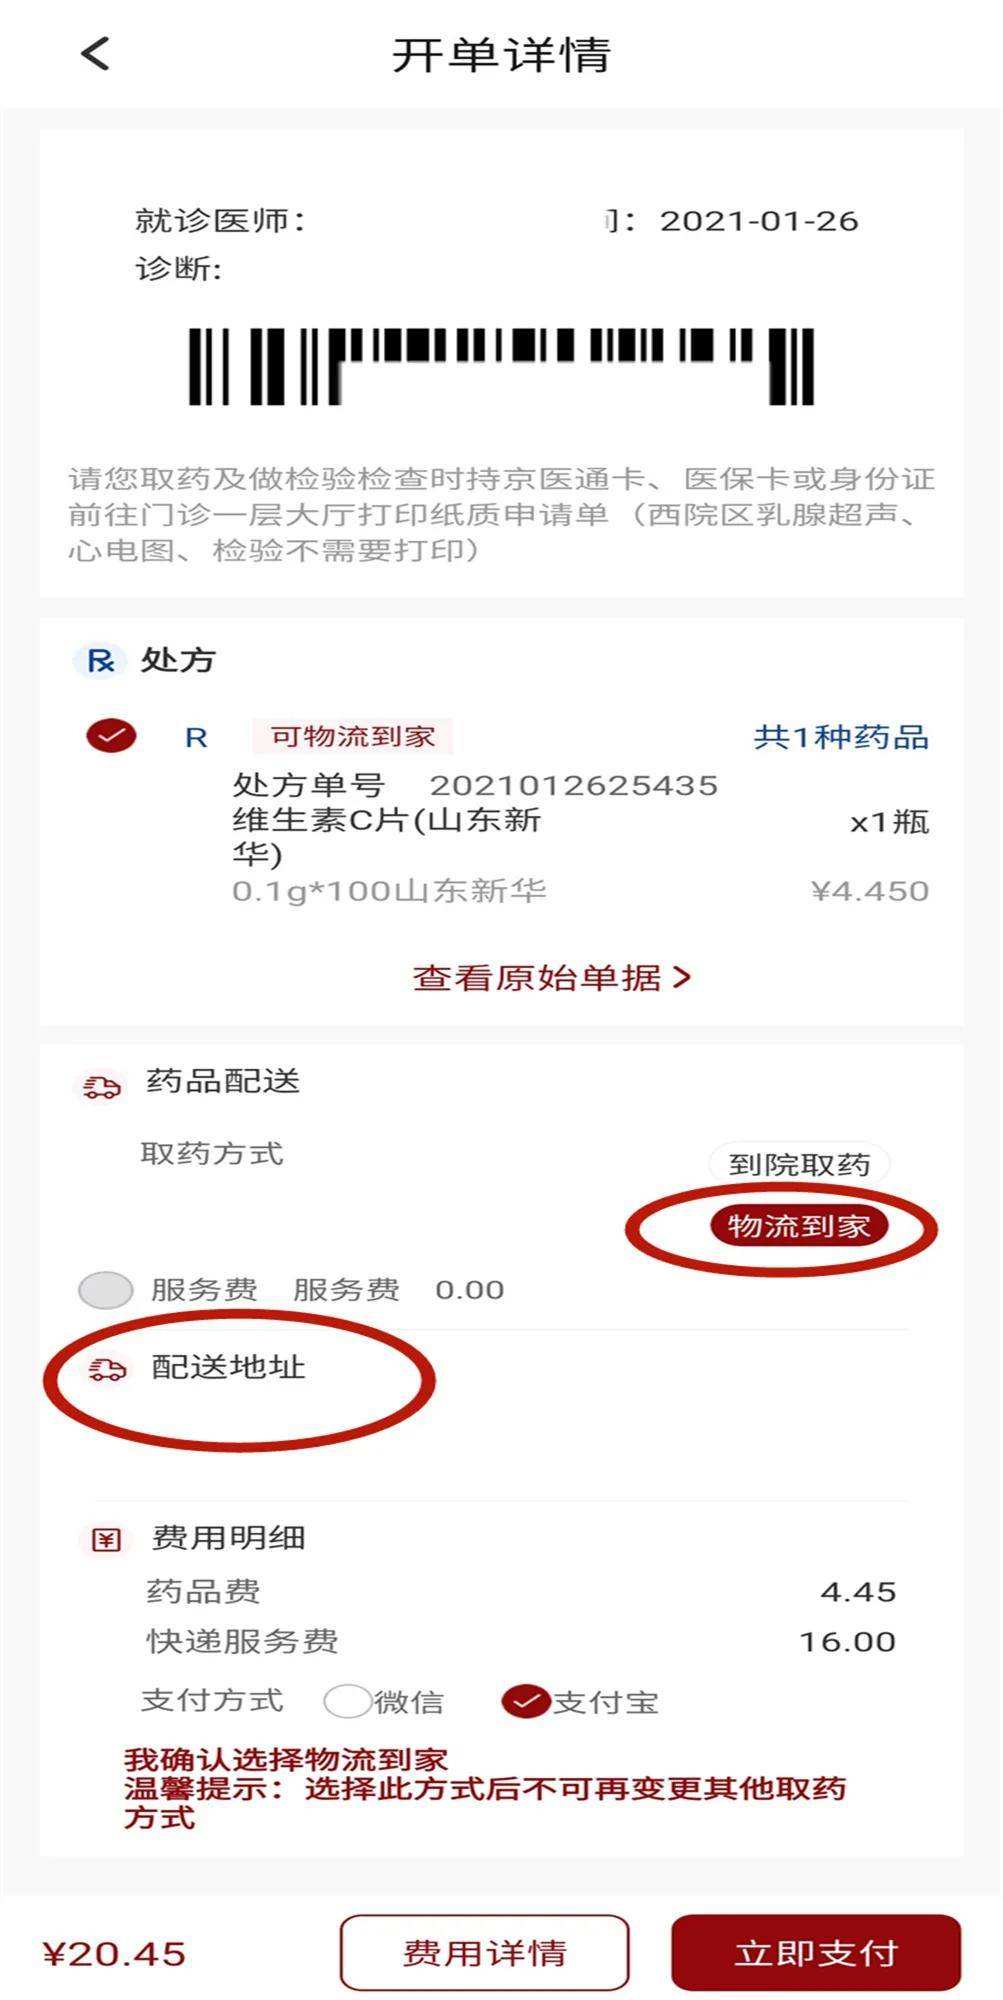 北京大学肿瘤医院票贩子挂号，安全快速有效-({号贩子挂号-黄牛票贩子代挂})